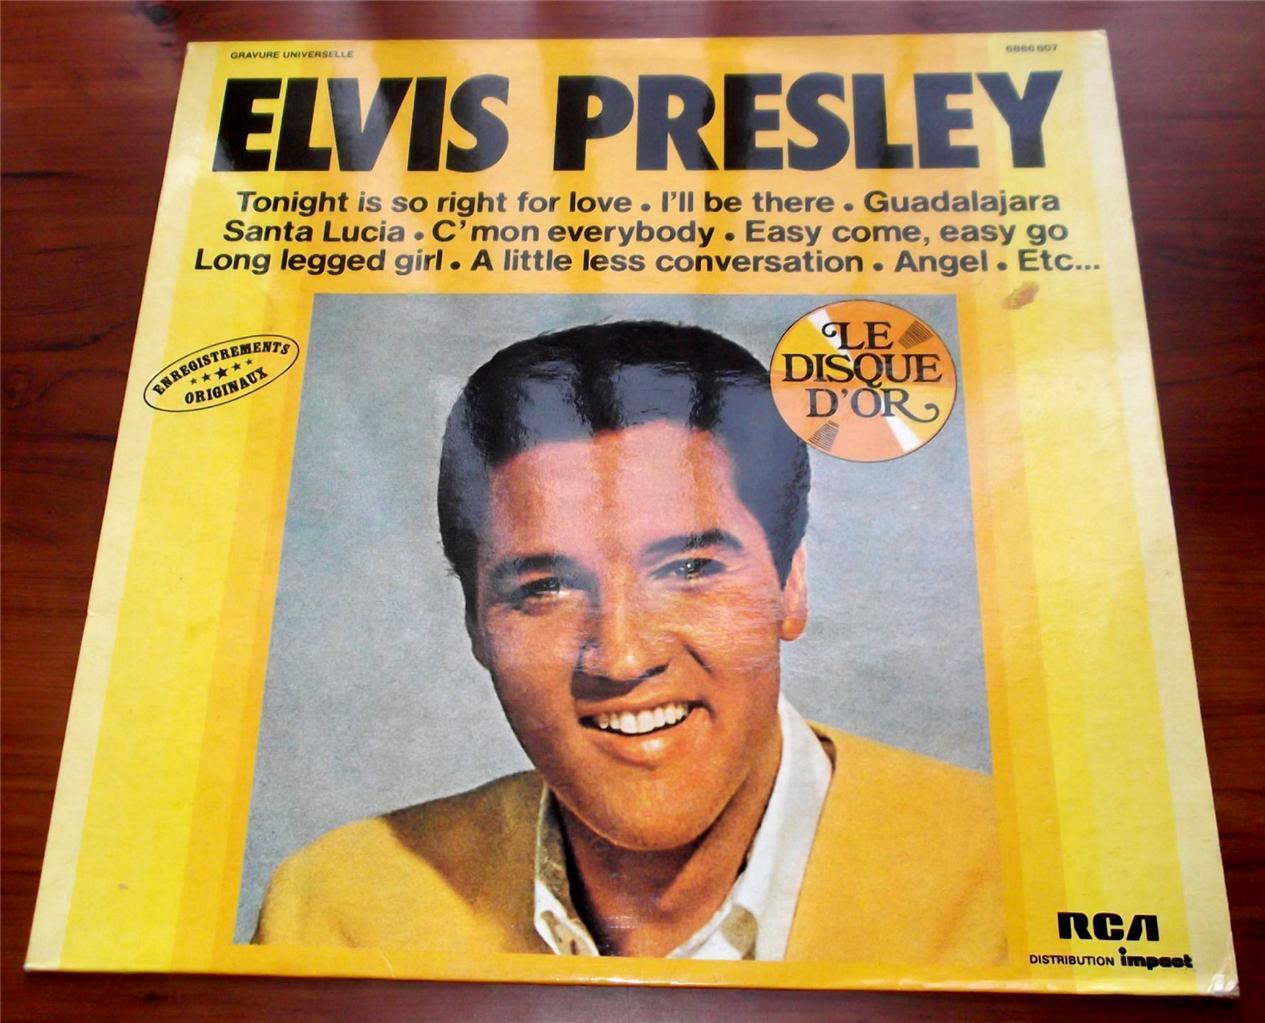 Elvis Presley  Le Disque D\'or  1977  RCA 6886 807  French Import  Vinyl LP  VG+